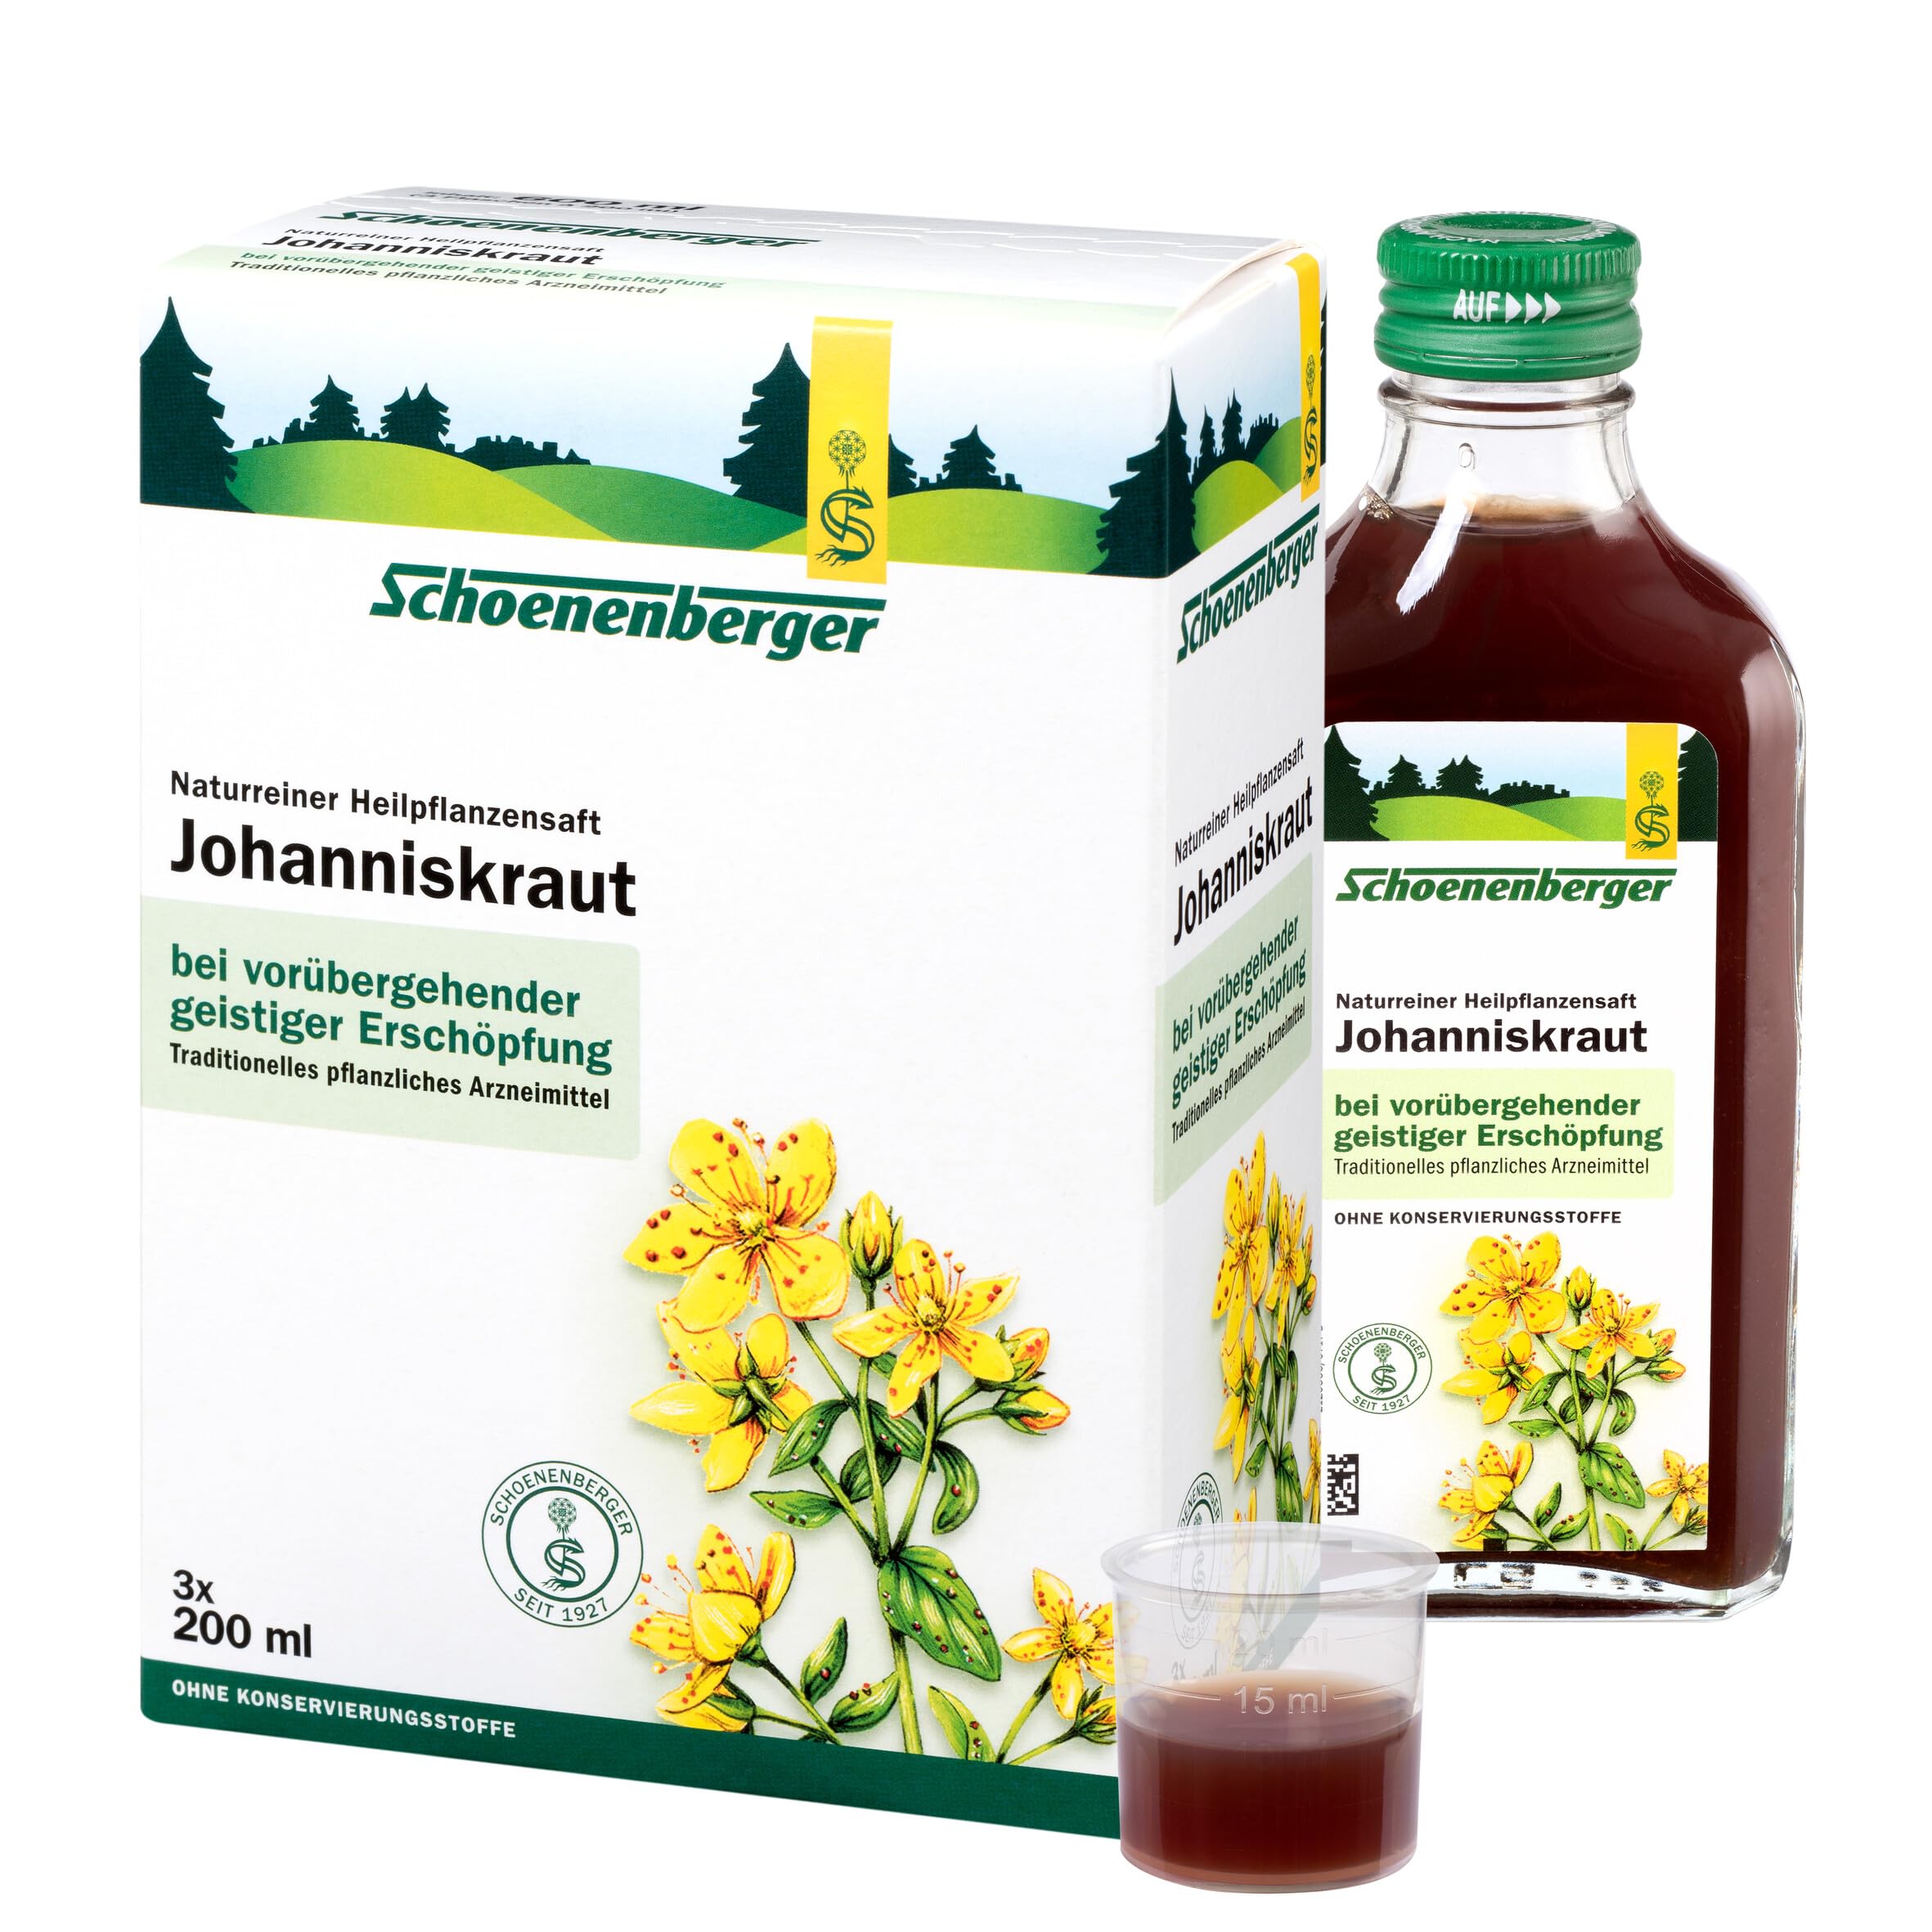 Schoenenberger - Johanniskraut naturreiner Heilpflanzensaft - 3x 200 ml (600 ml) Glasflaschen - freiverkäufliches Arzneimittel - zur Linderung vorübergehender geistiger Erschöpfung